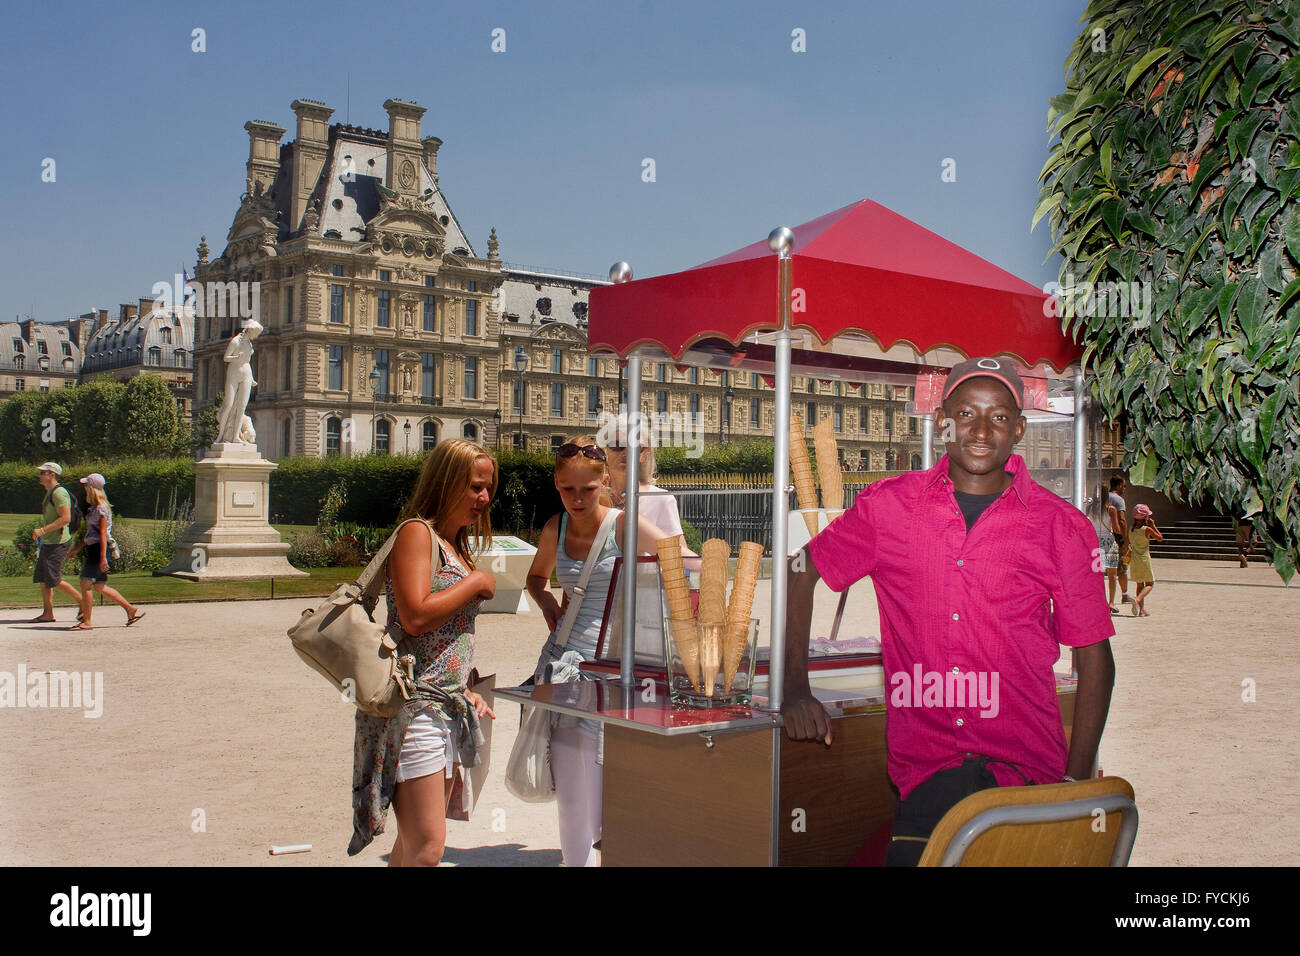 An ice cream seller poses for a photos taken in Paris Stock Photo